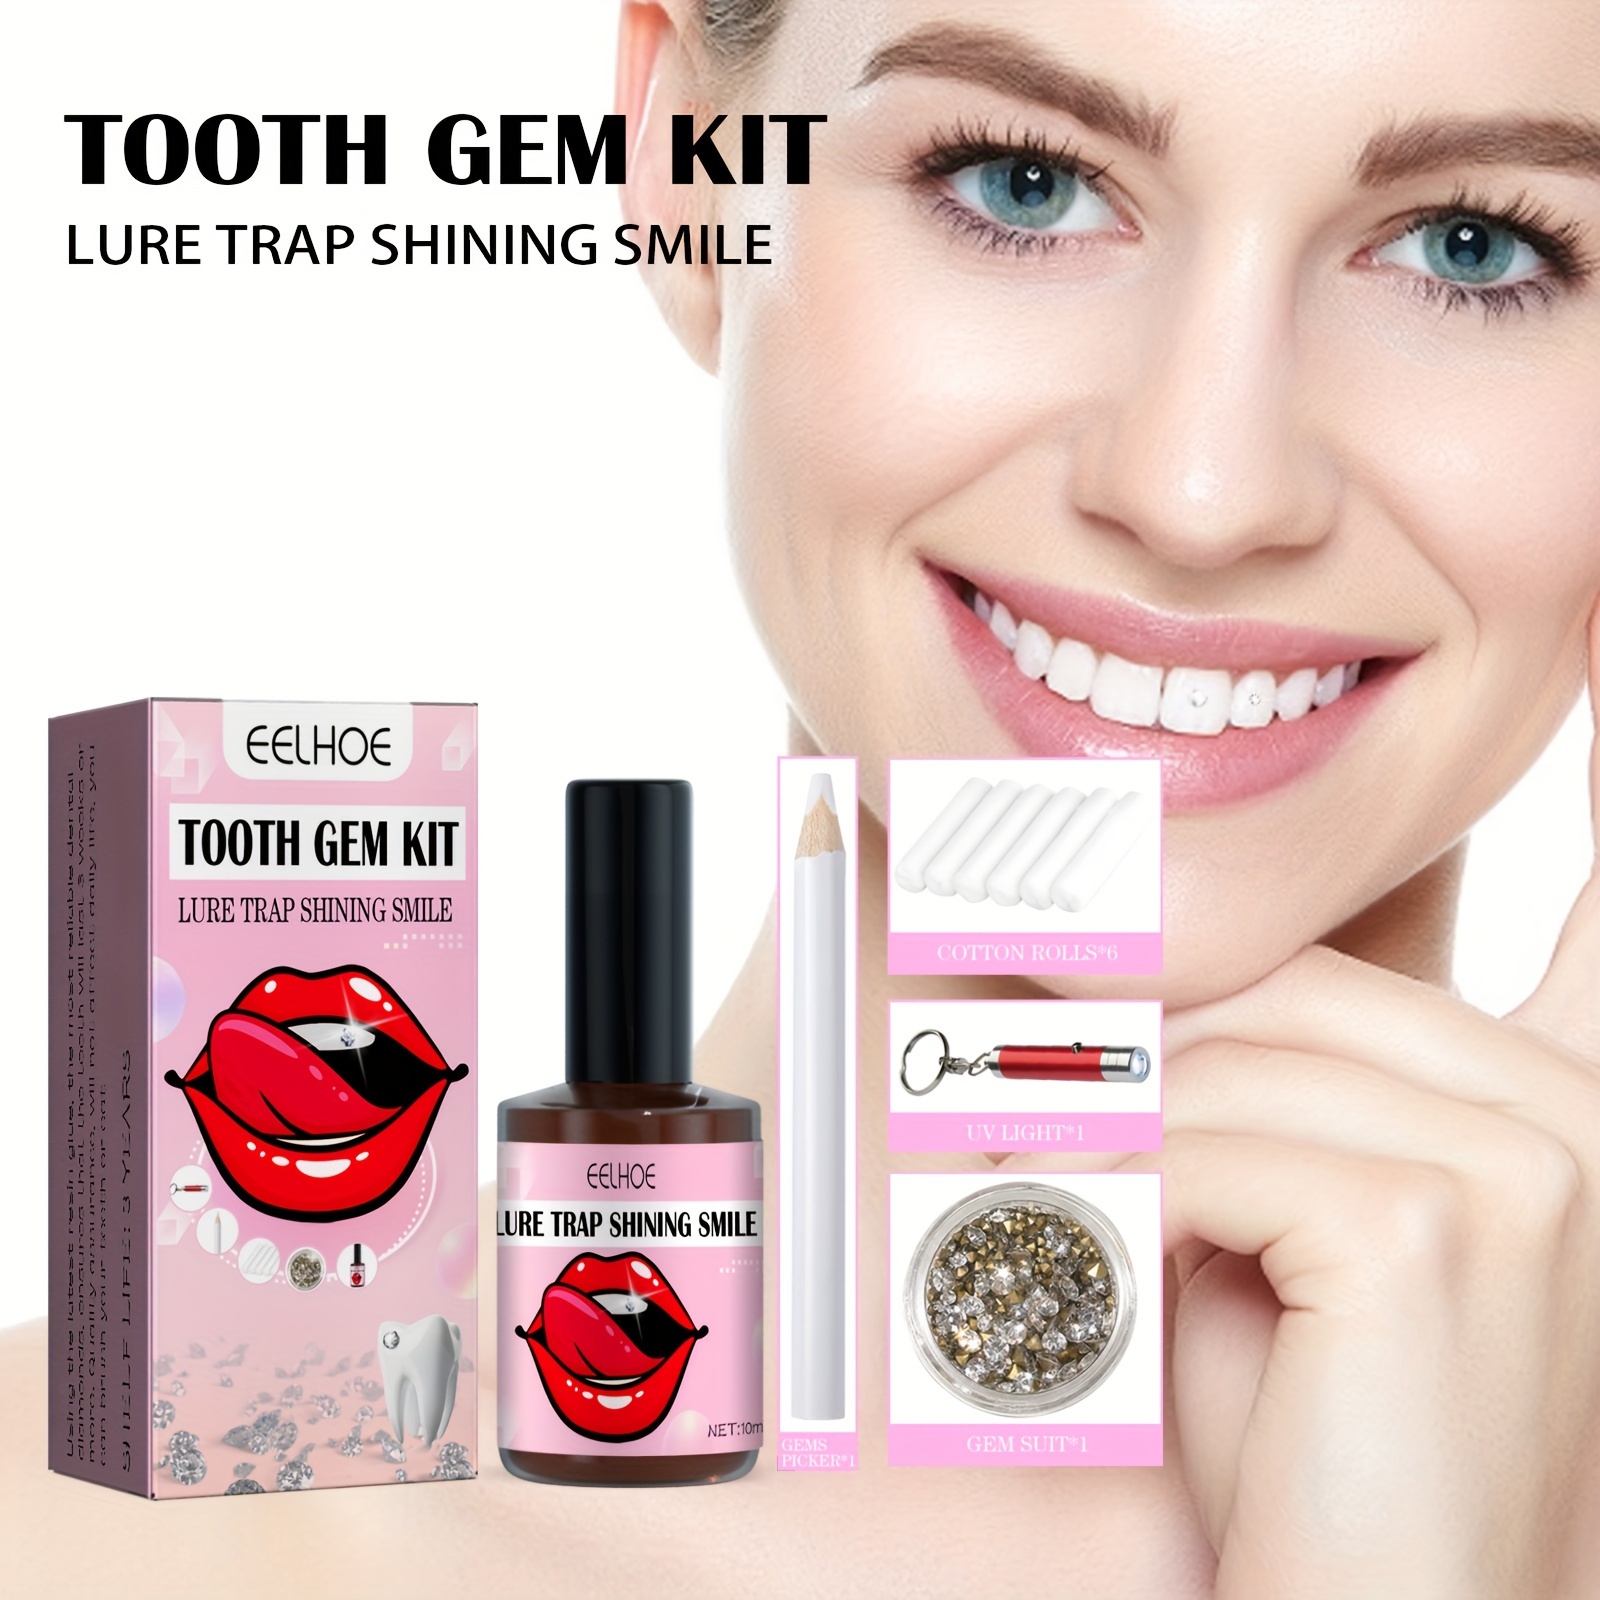 Eelhoe Tooth Gem Kit